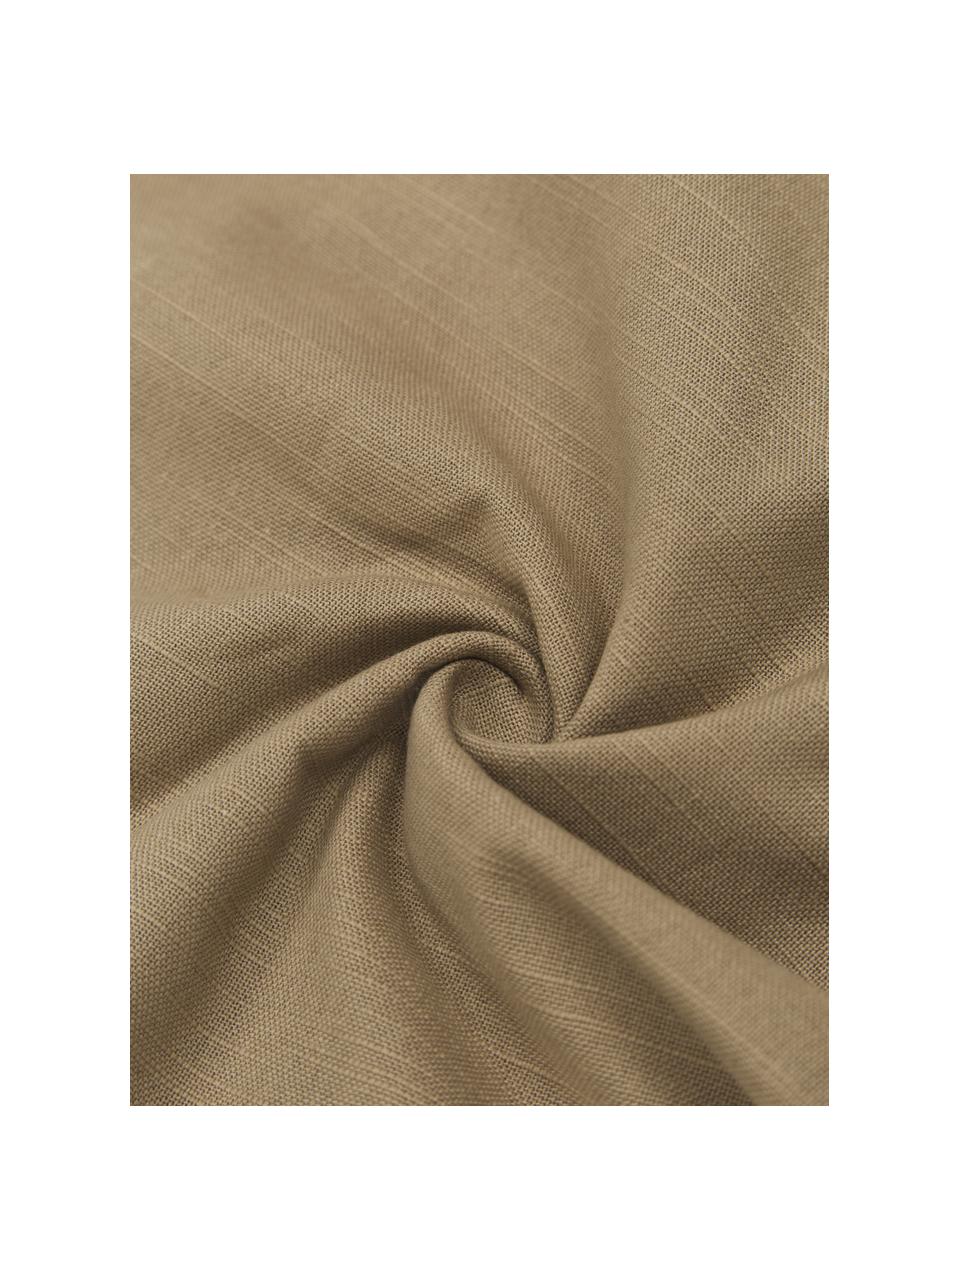 Copricuscino in velluto Malva, Retro: 100% cotone, Color sabbia, Larg. 50 x Lung. 50 cm